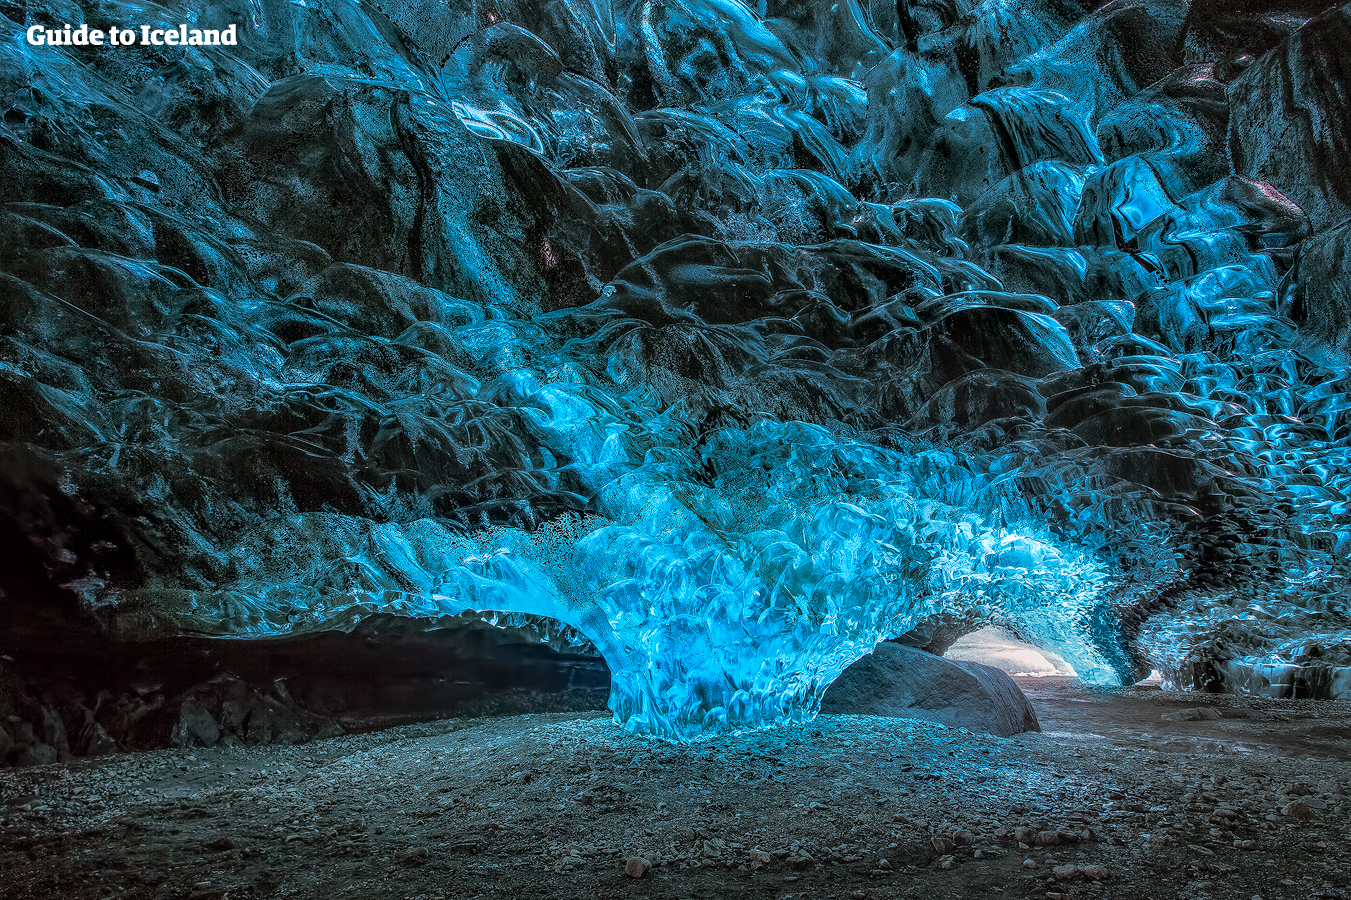 スーパーブルーとも呼ばれるアイスランドの氷の洞窟に入り内部を探検しながらガイドから氷河や洞窟のでき方について説明がある